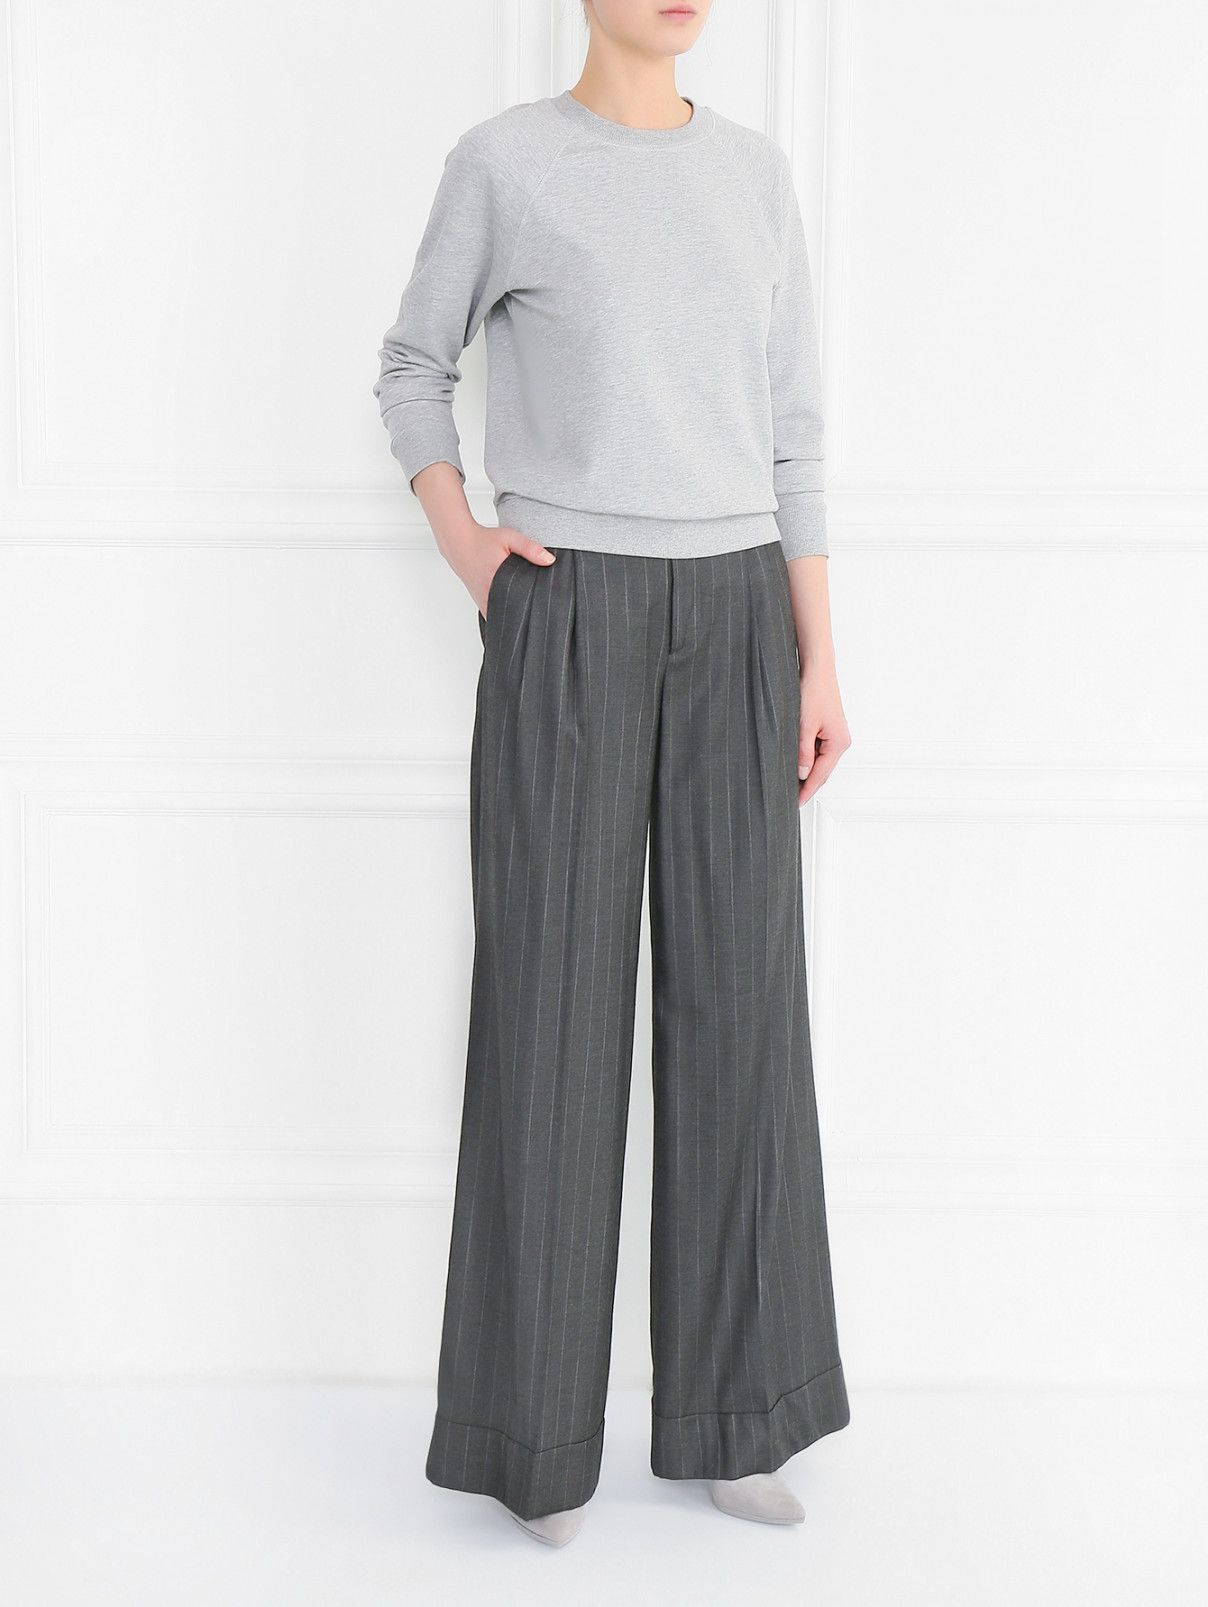 Широкие брюки свободного кроя из вискозы и шерсти с узором Etro  –  Модель Общий вид  – Цвет:  Серый